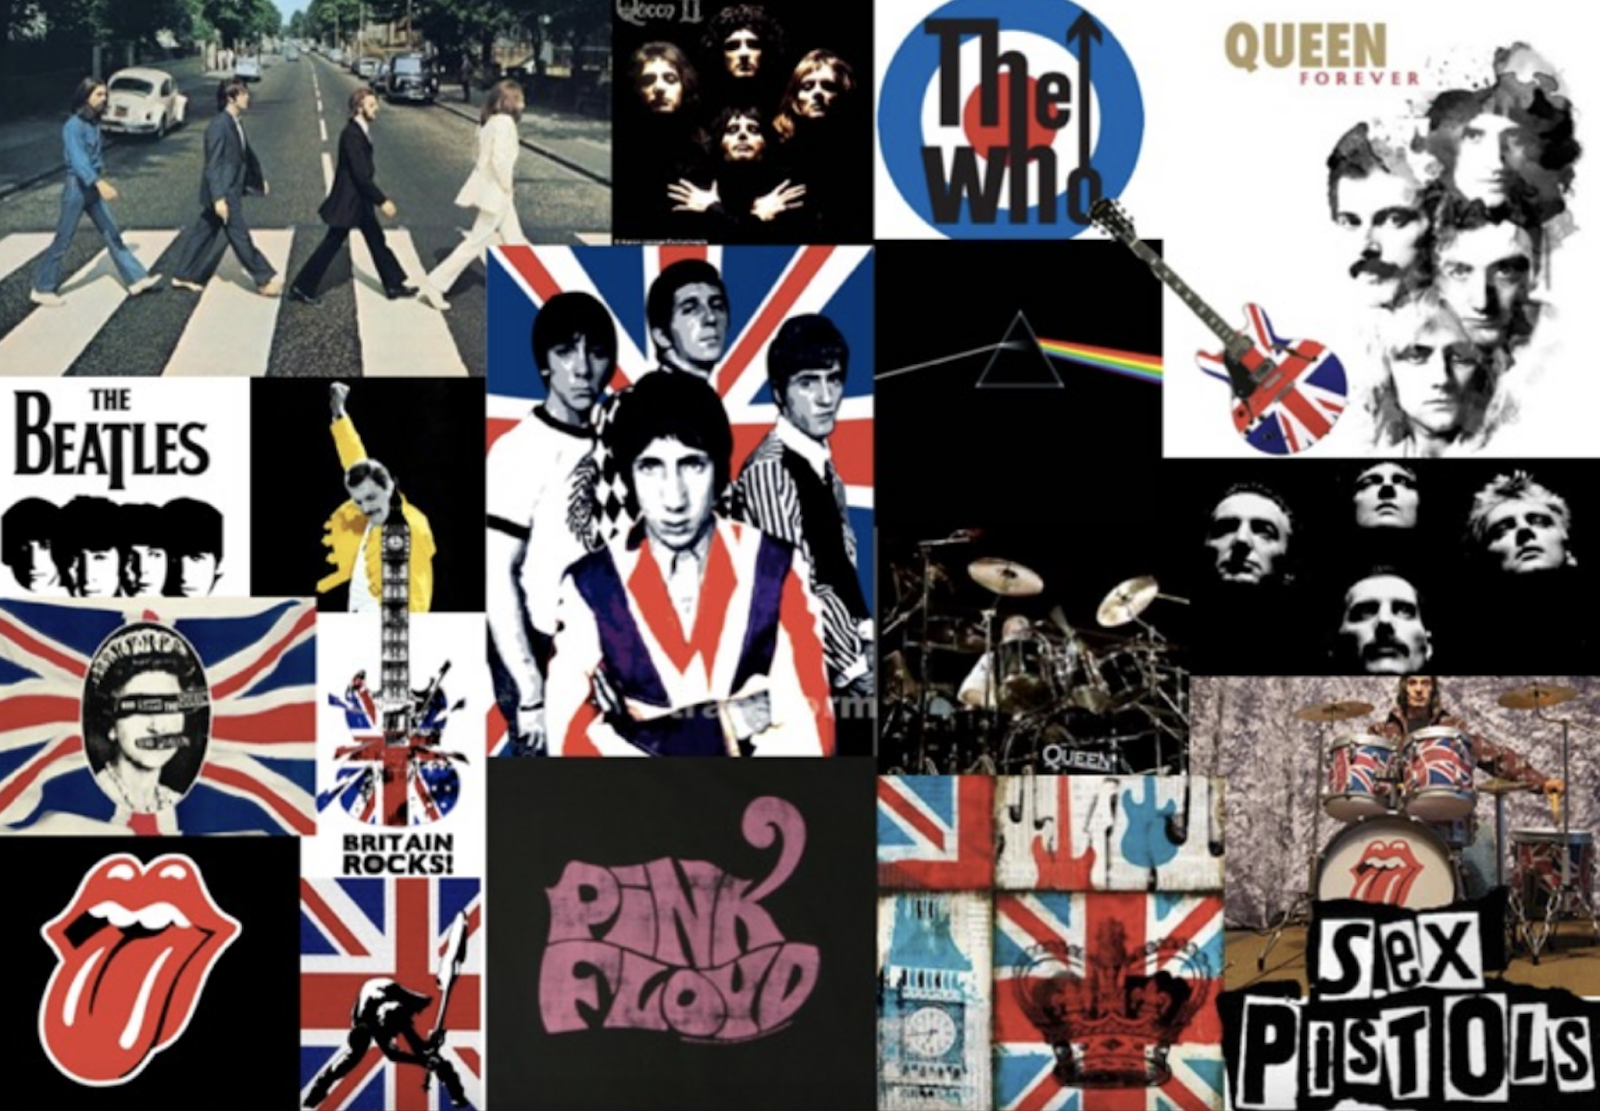 Рок на англ. Британский рок. Английские рок группы. Английские группы музыкальные. Рок Великобритании.